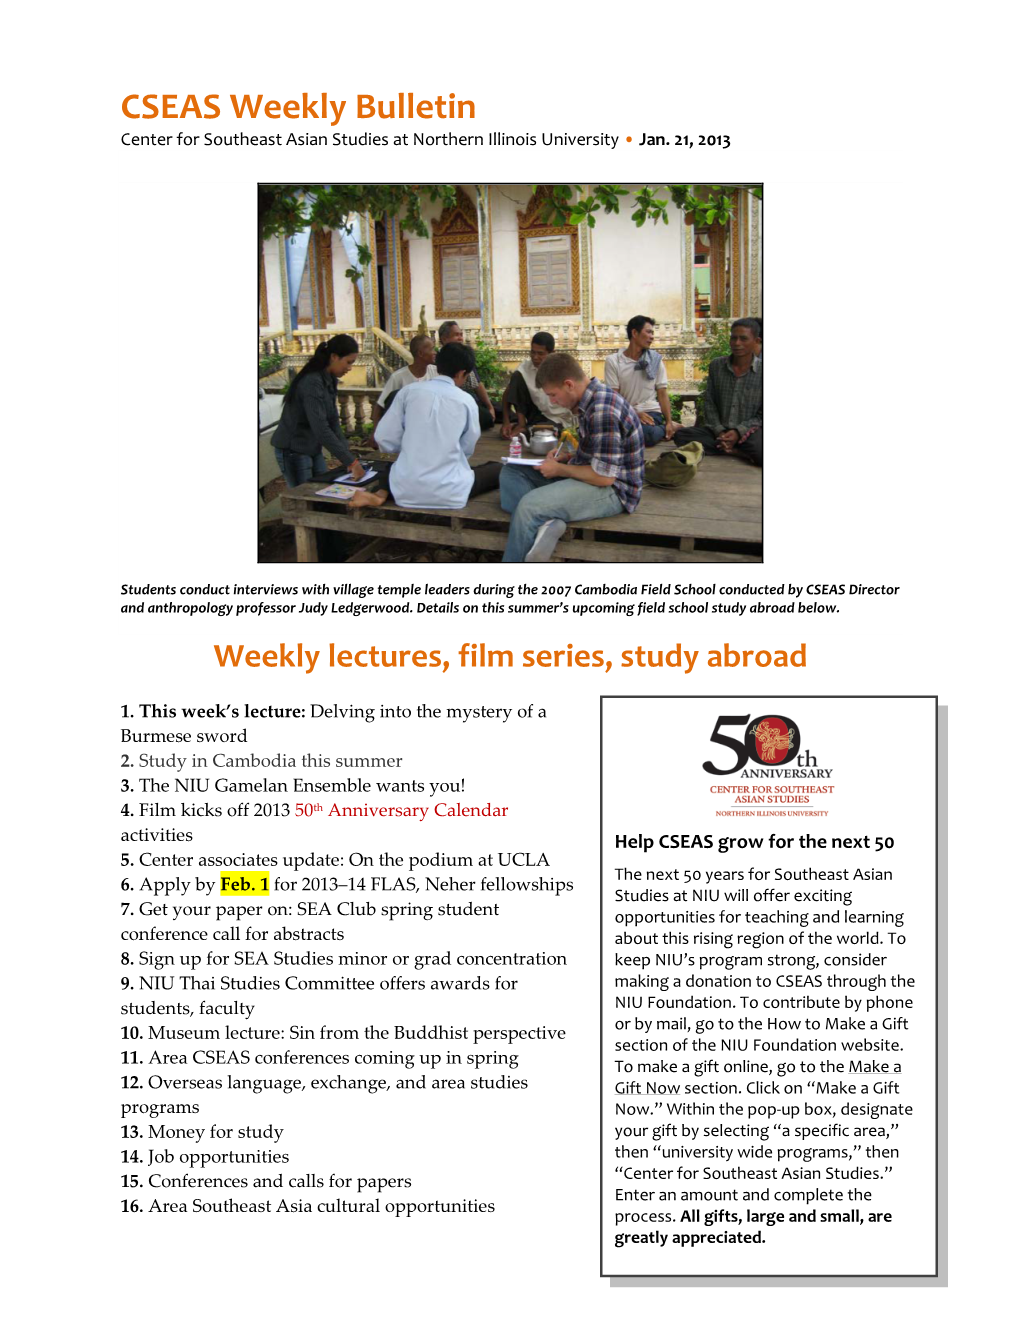 CSEAS Weekly Bulletin Center for Southeast Asian Studies at Northern Illinois University • Jan